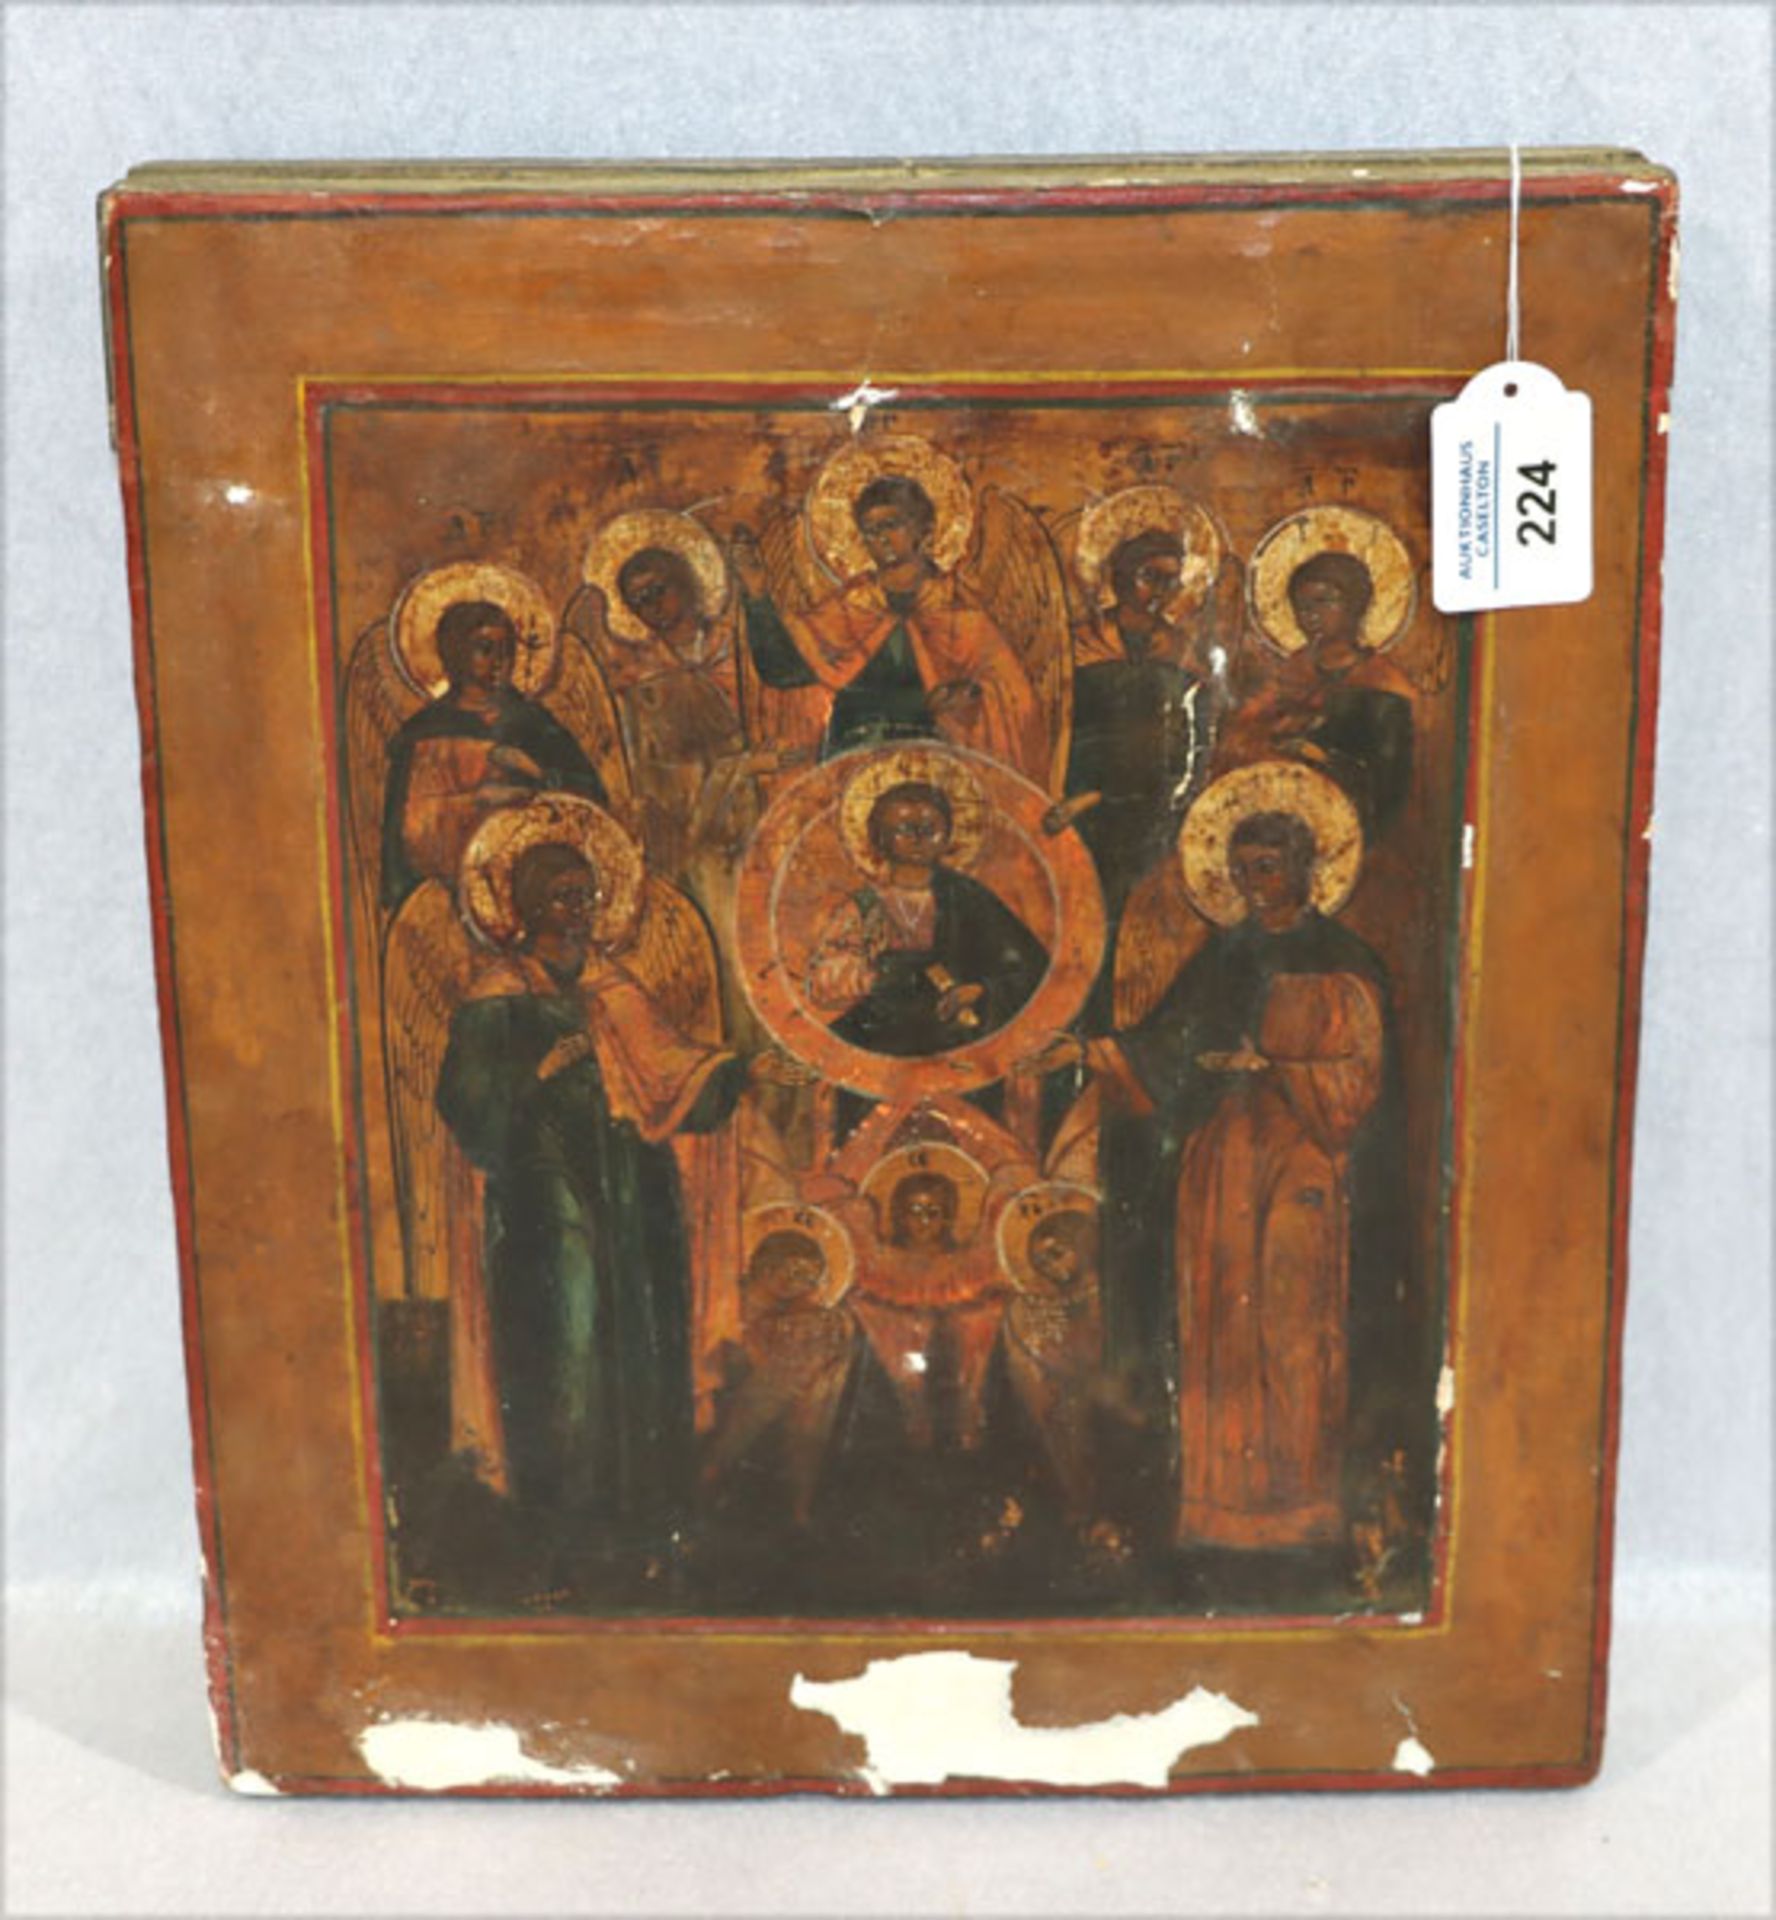 Ikone 'Jesus mit Engel',Bildoberfläche beschädigt, Farbablösungen, 36 cm x 31 cm (00057)